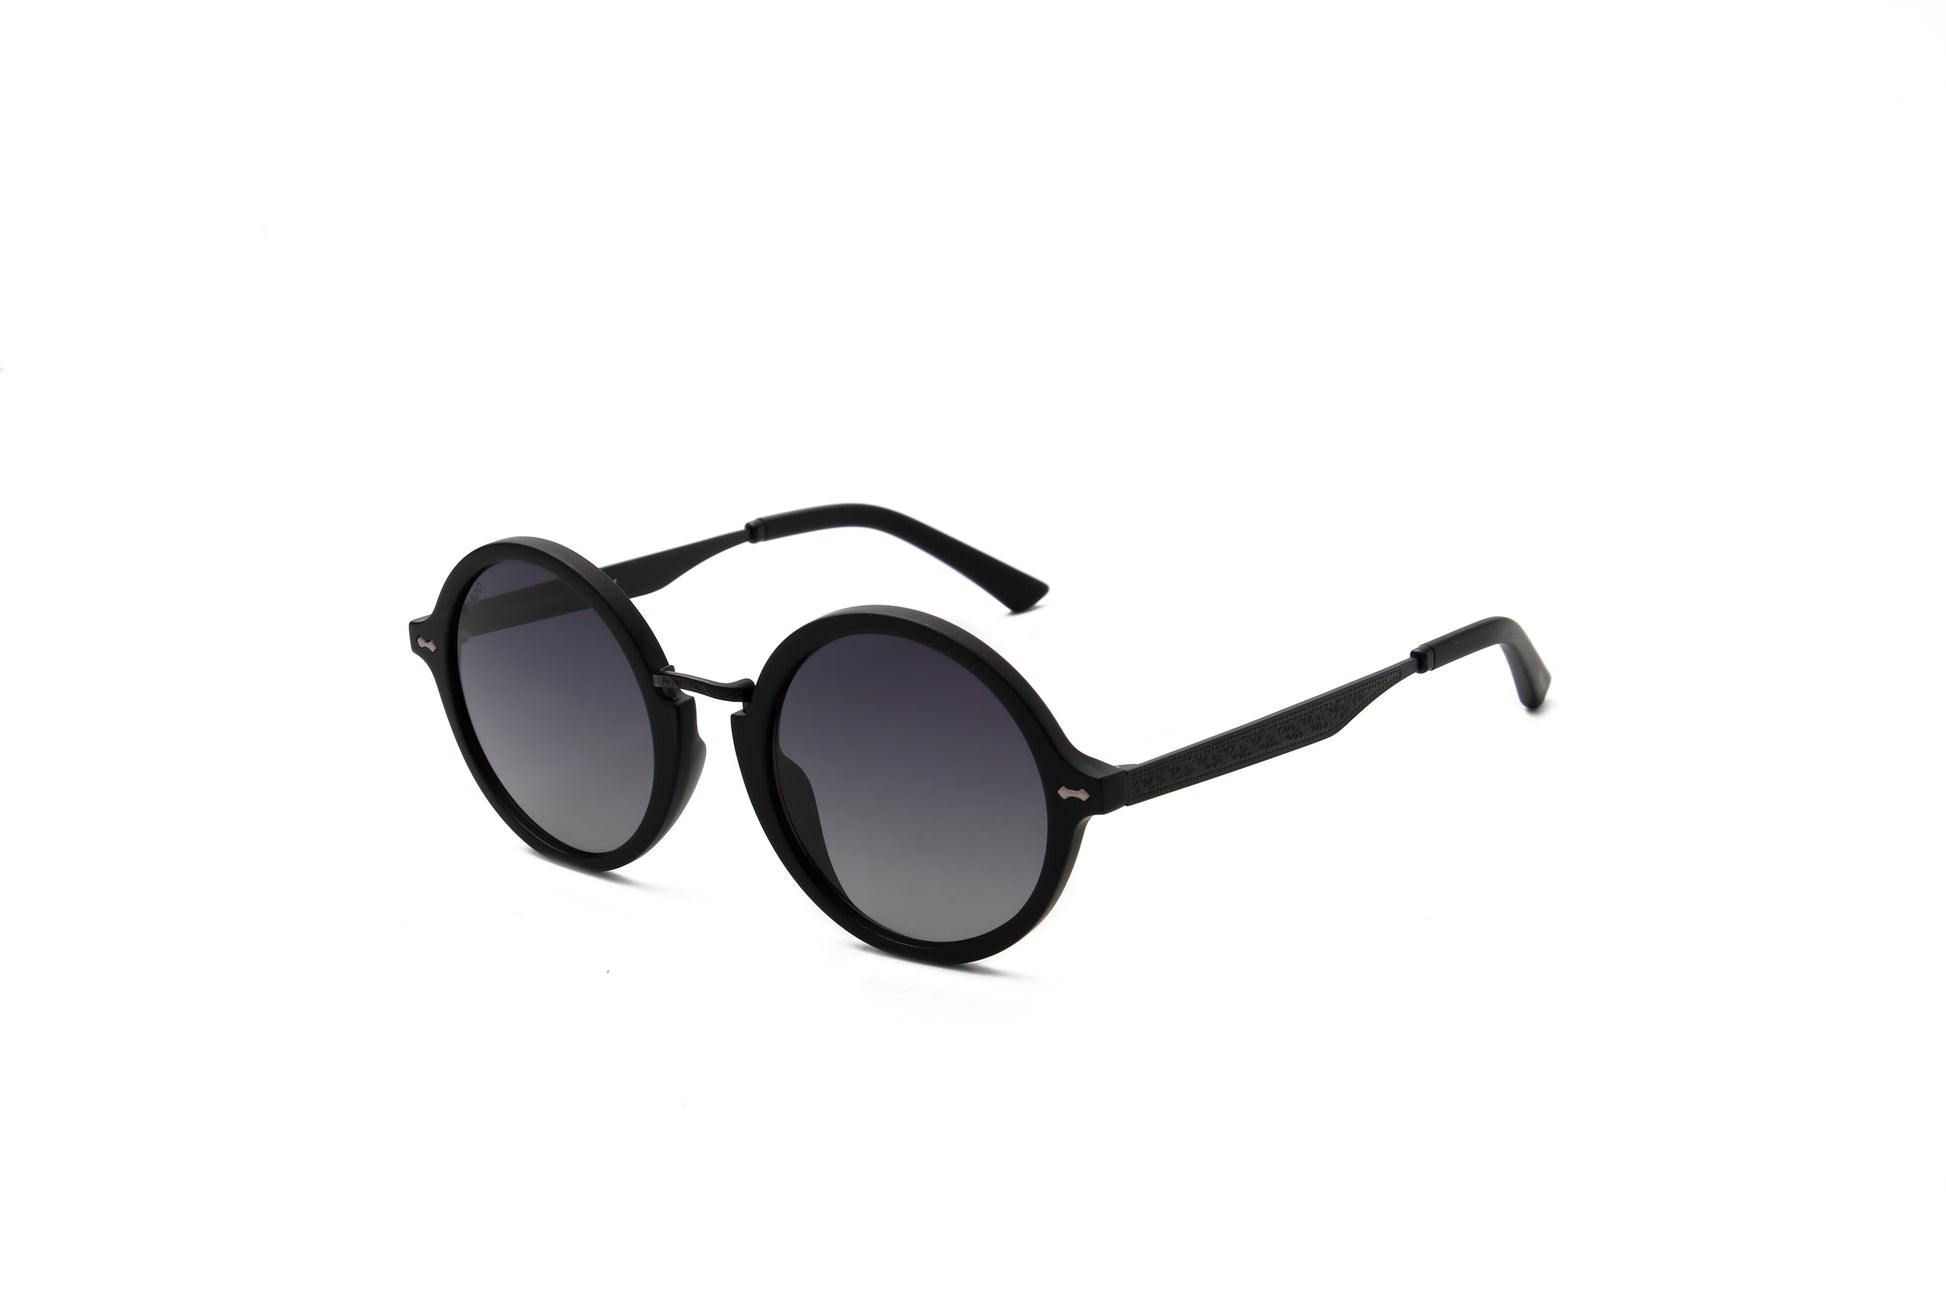 Privado Athene matte black sunglasses alternate view